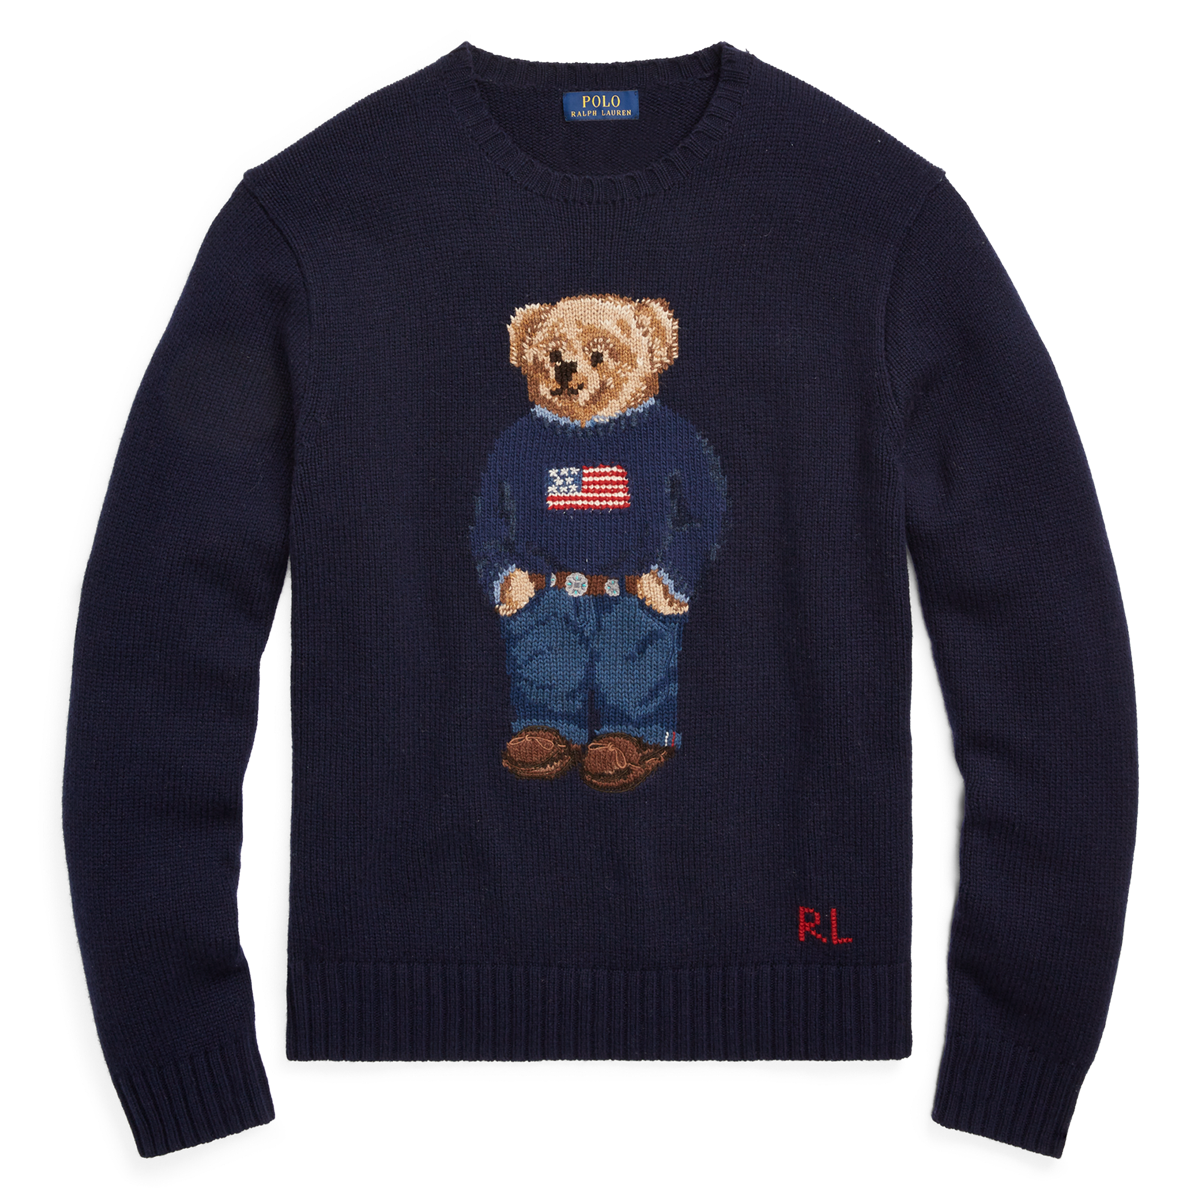 Total 60+ imagen vintage ralph lauren bear sweater - Abzlocal.mx